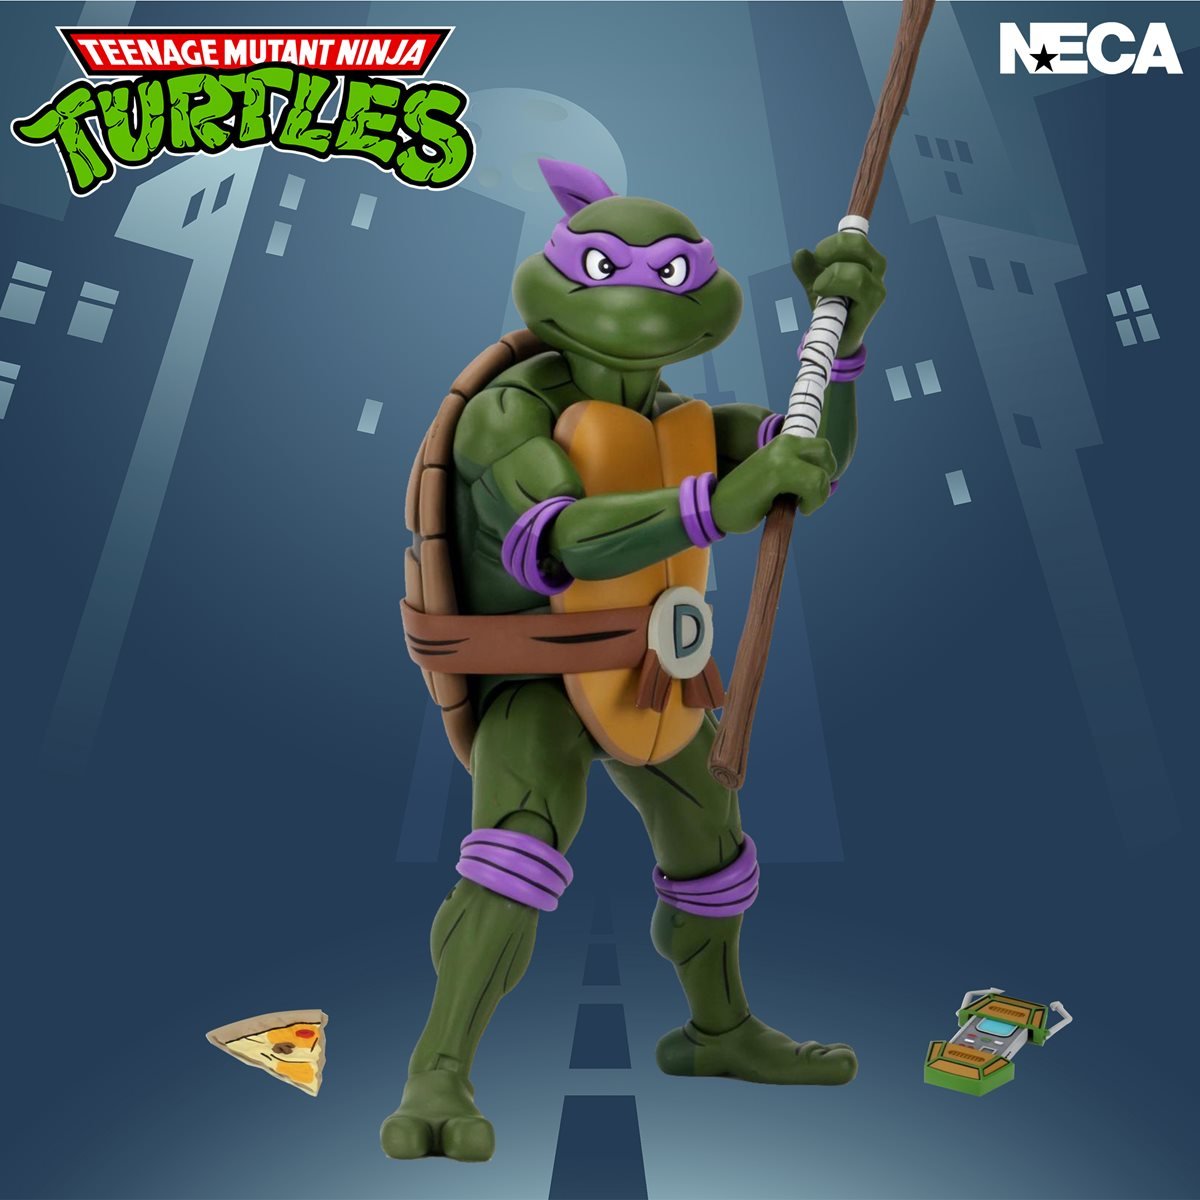 Teenage Mutant Ninja Turtles Donatello Adult T-Shirt Kit